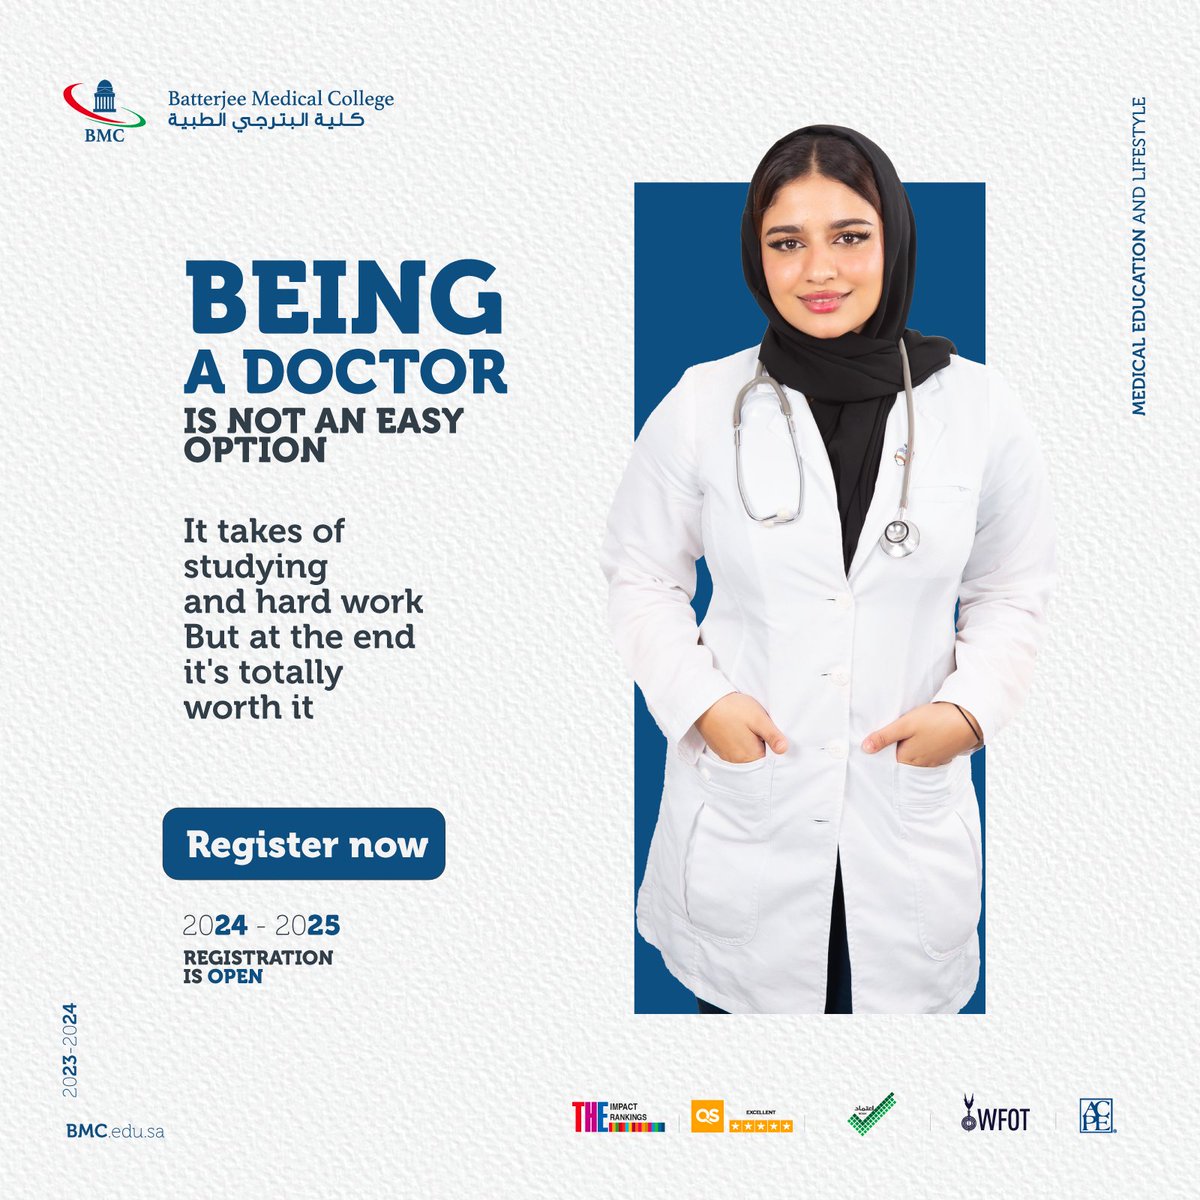 ابدأ رحلة التفوق الطبي - سجل اليوم في برامجنا المتقدمة في المملكة العربية السعودية bmc.edu.sa/en/apply . #التسجيل_مفتوح #كلية_البترجي #2024-2025